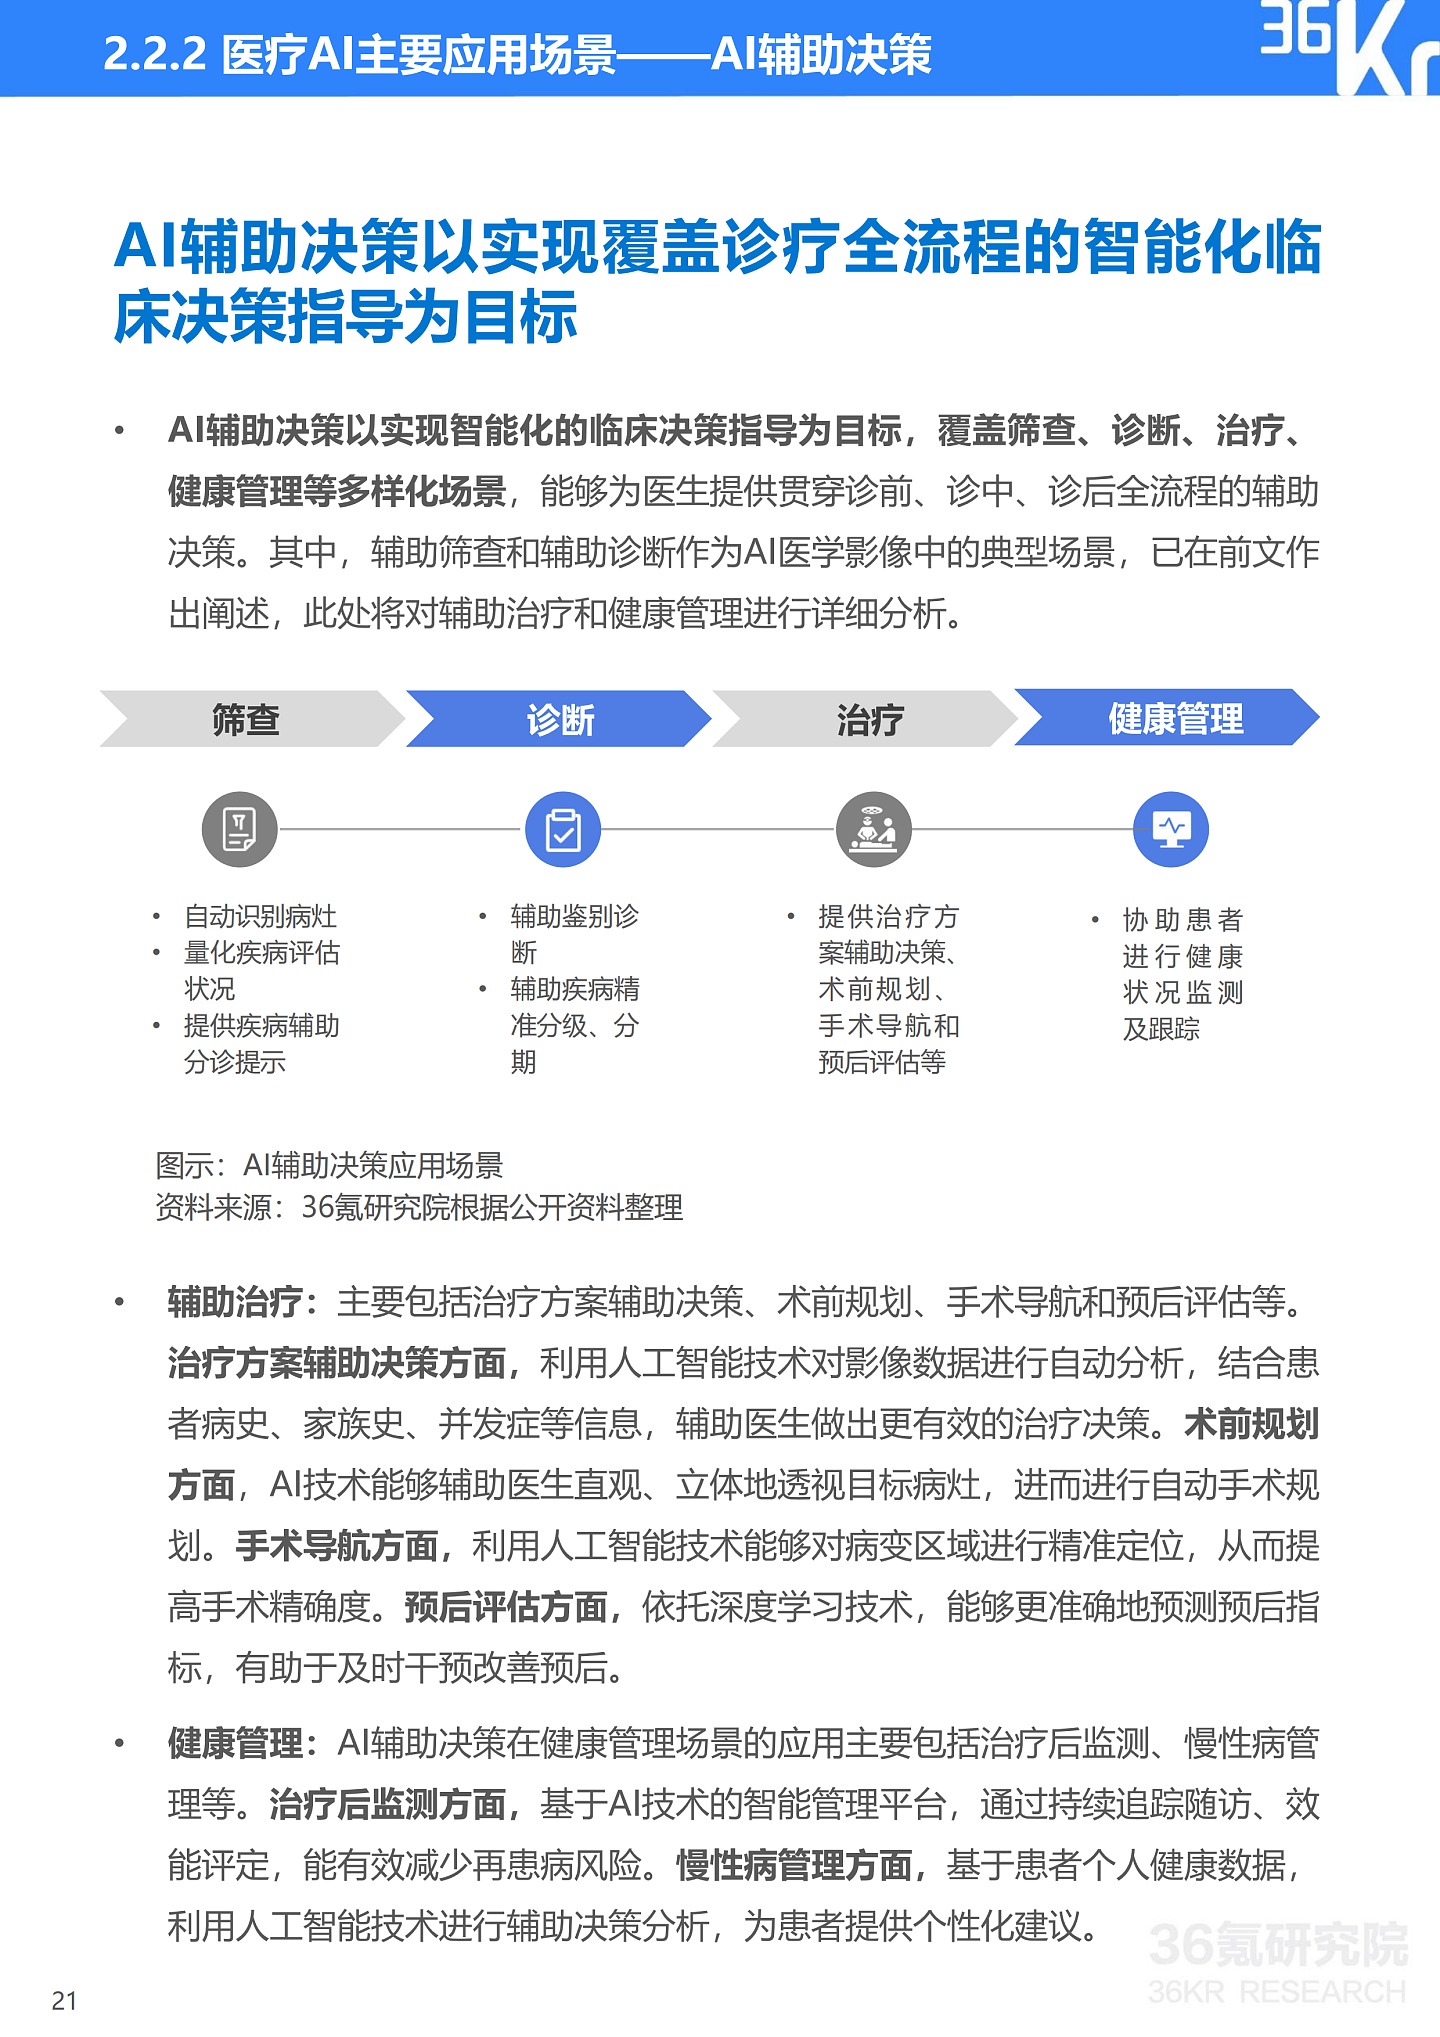 36氪研究院 | 2021年中国医疗AI行业研究报告 - 24